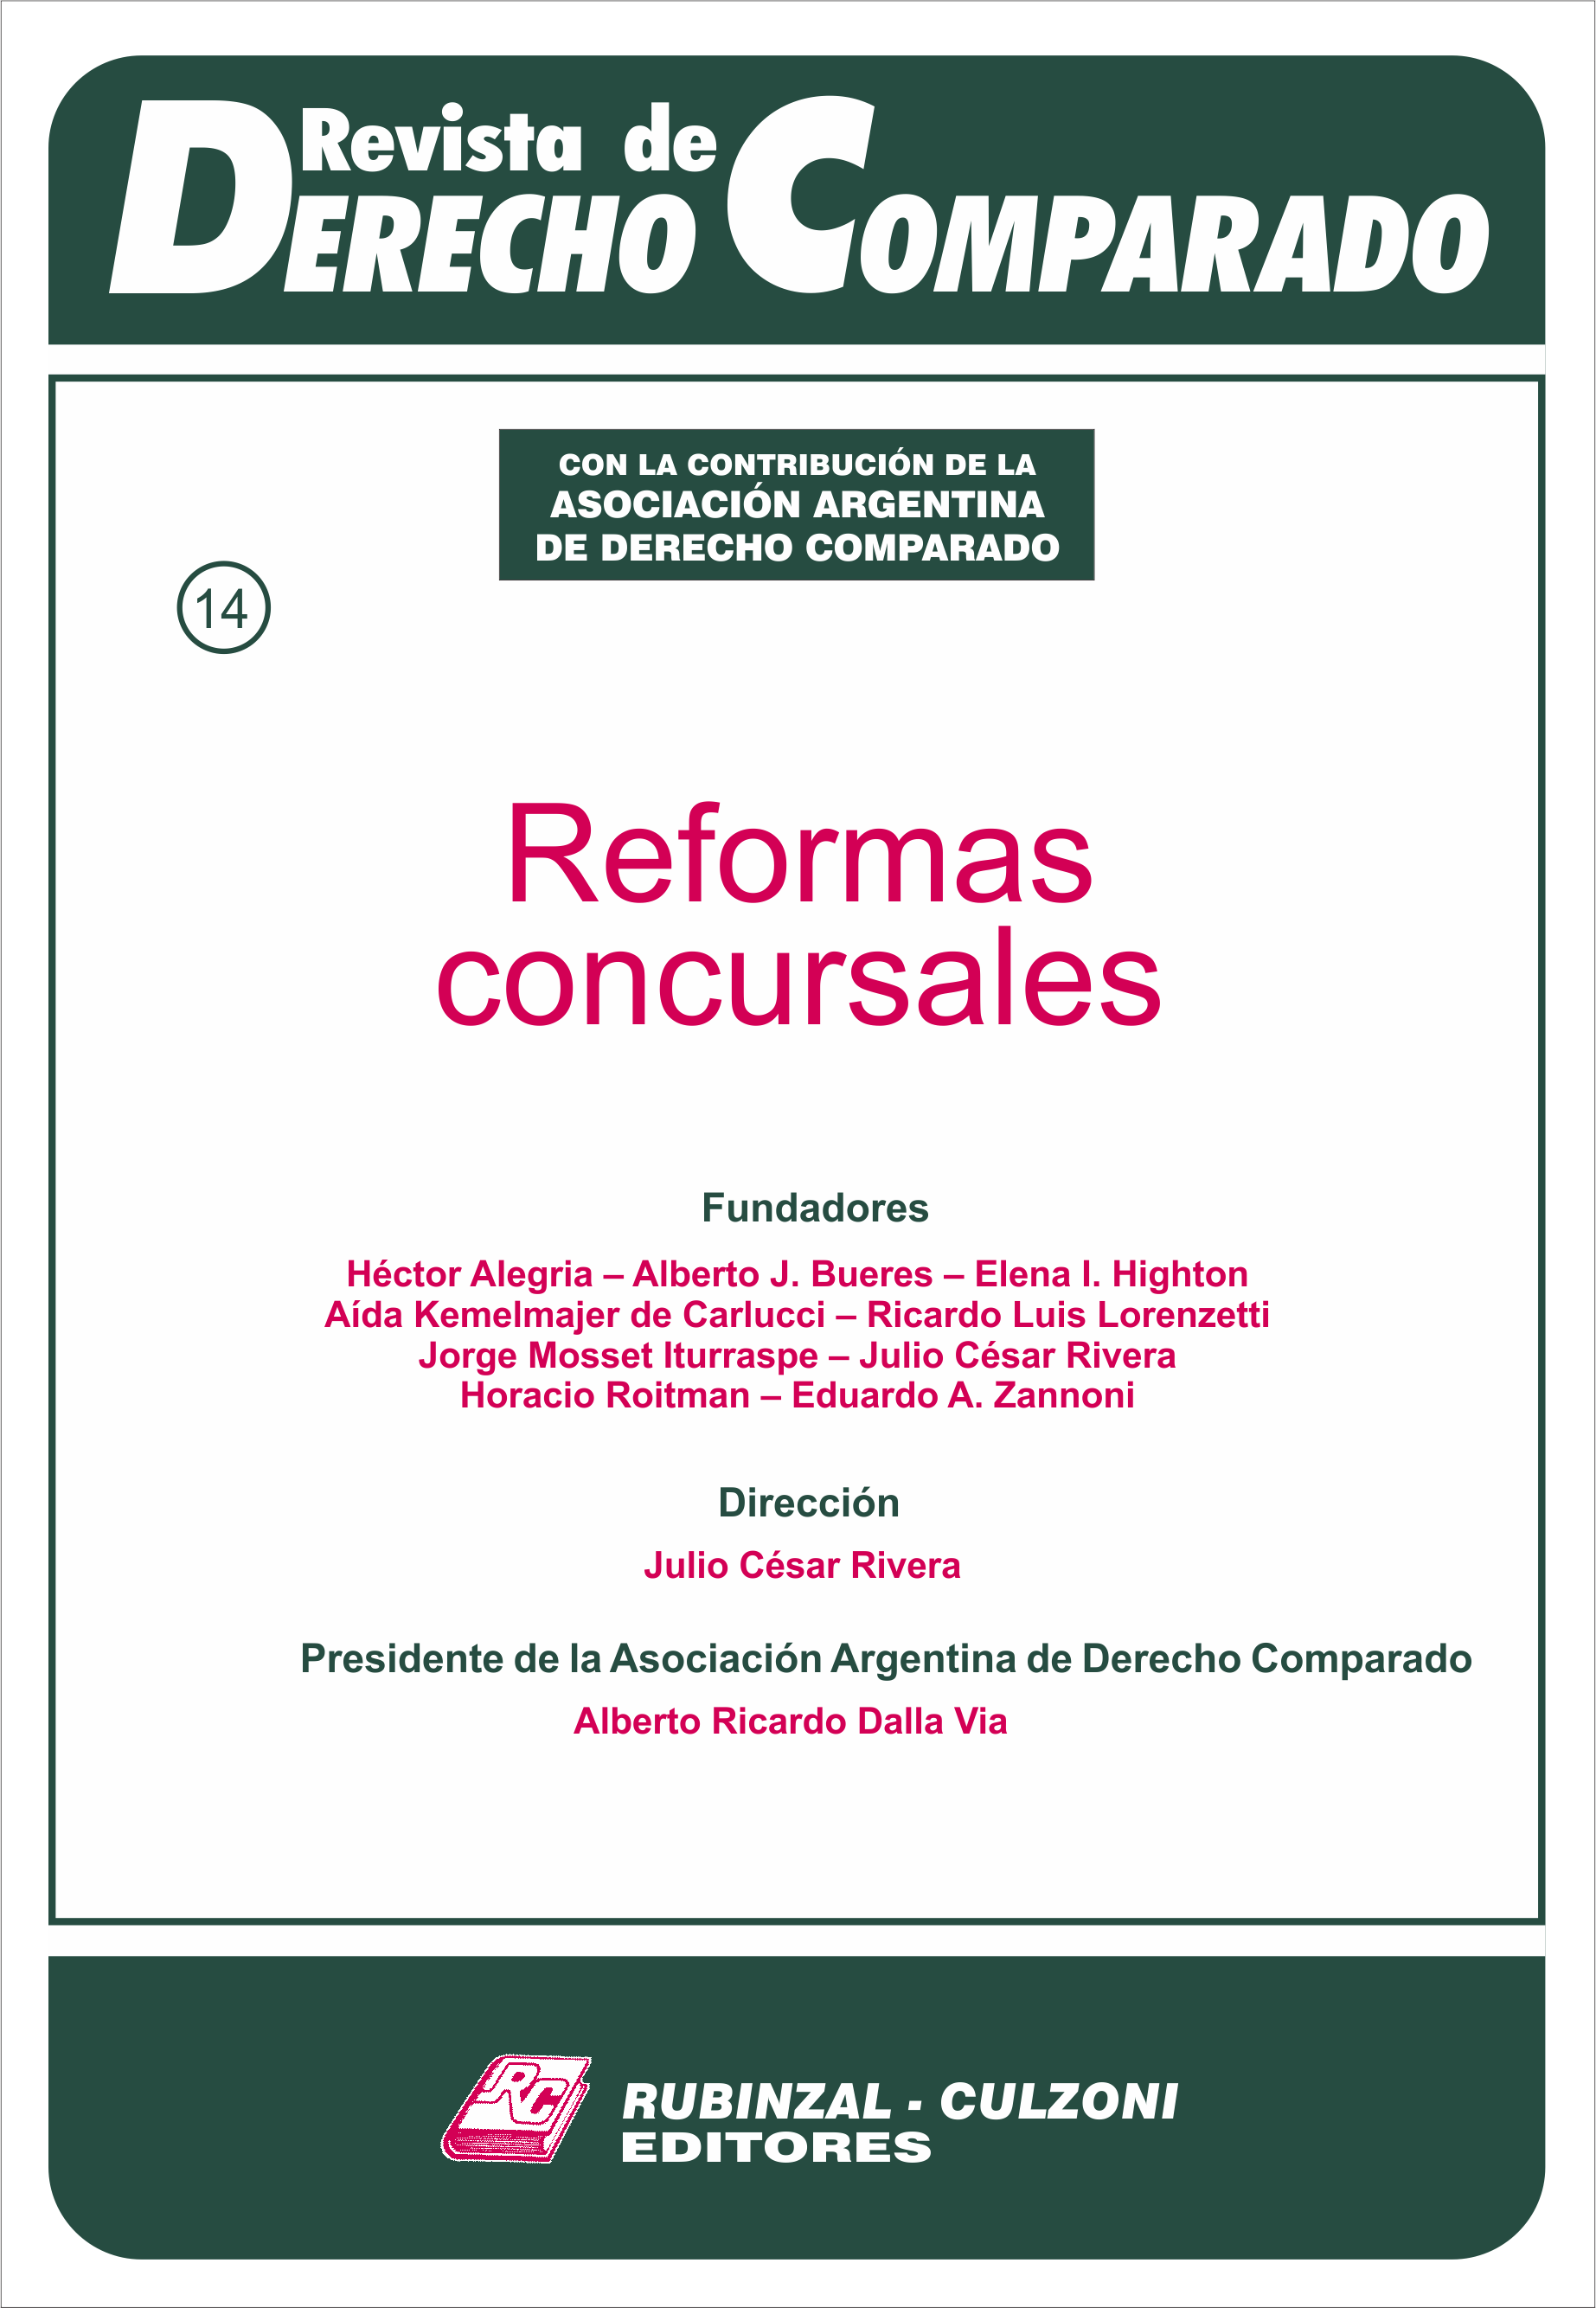 Revista de Derecho Comparado - Reformas concursales